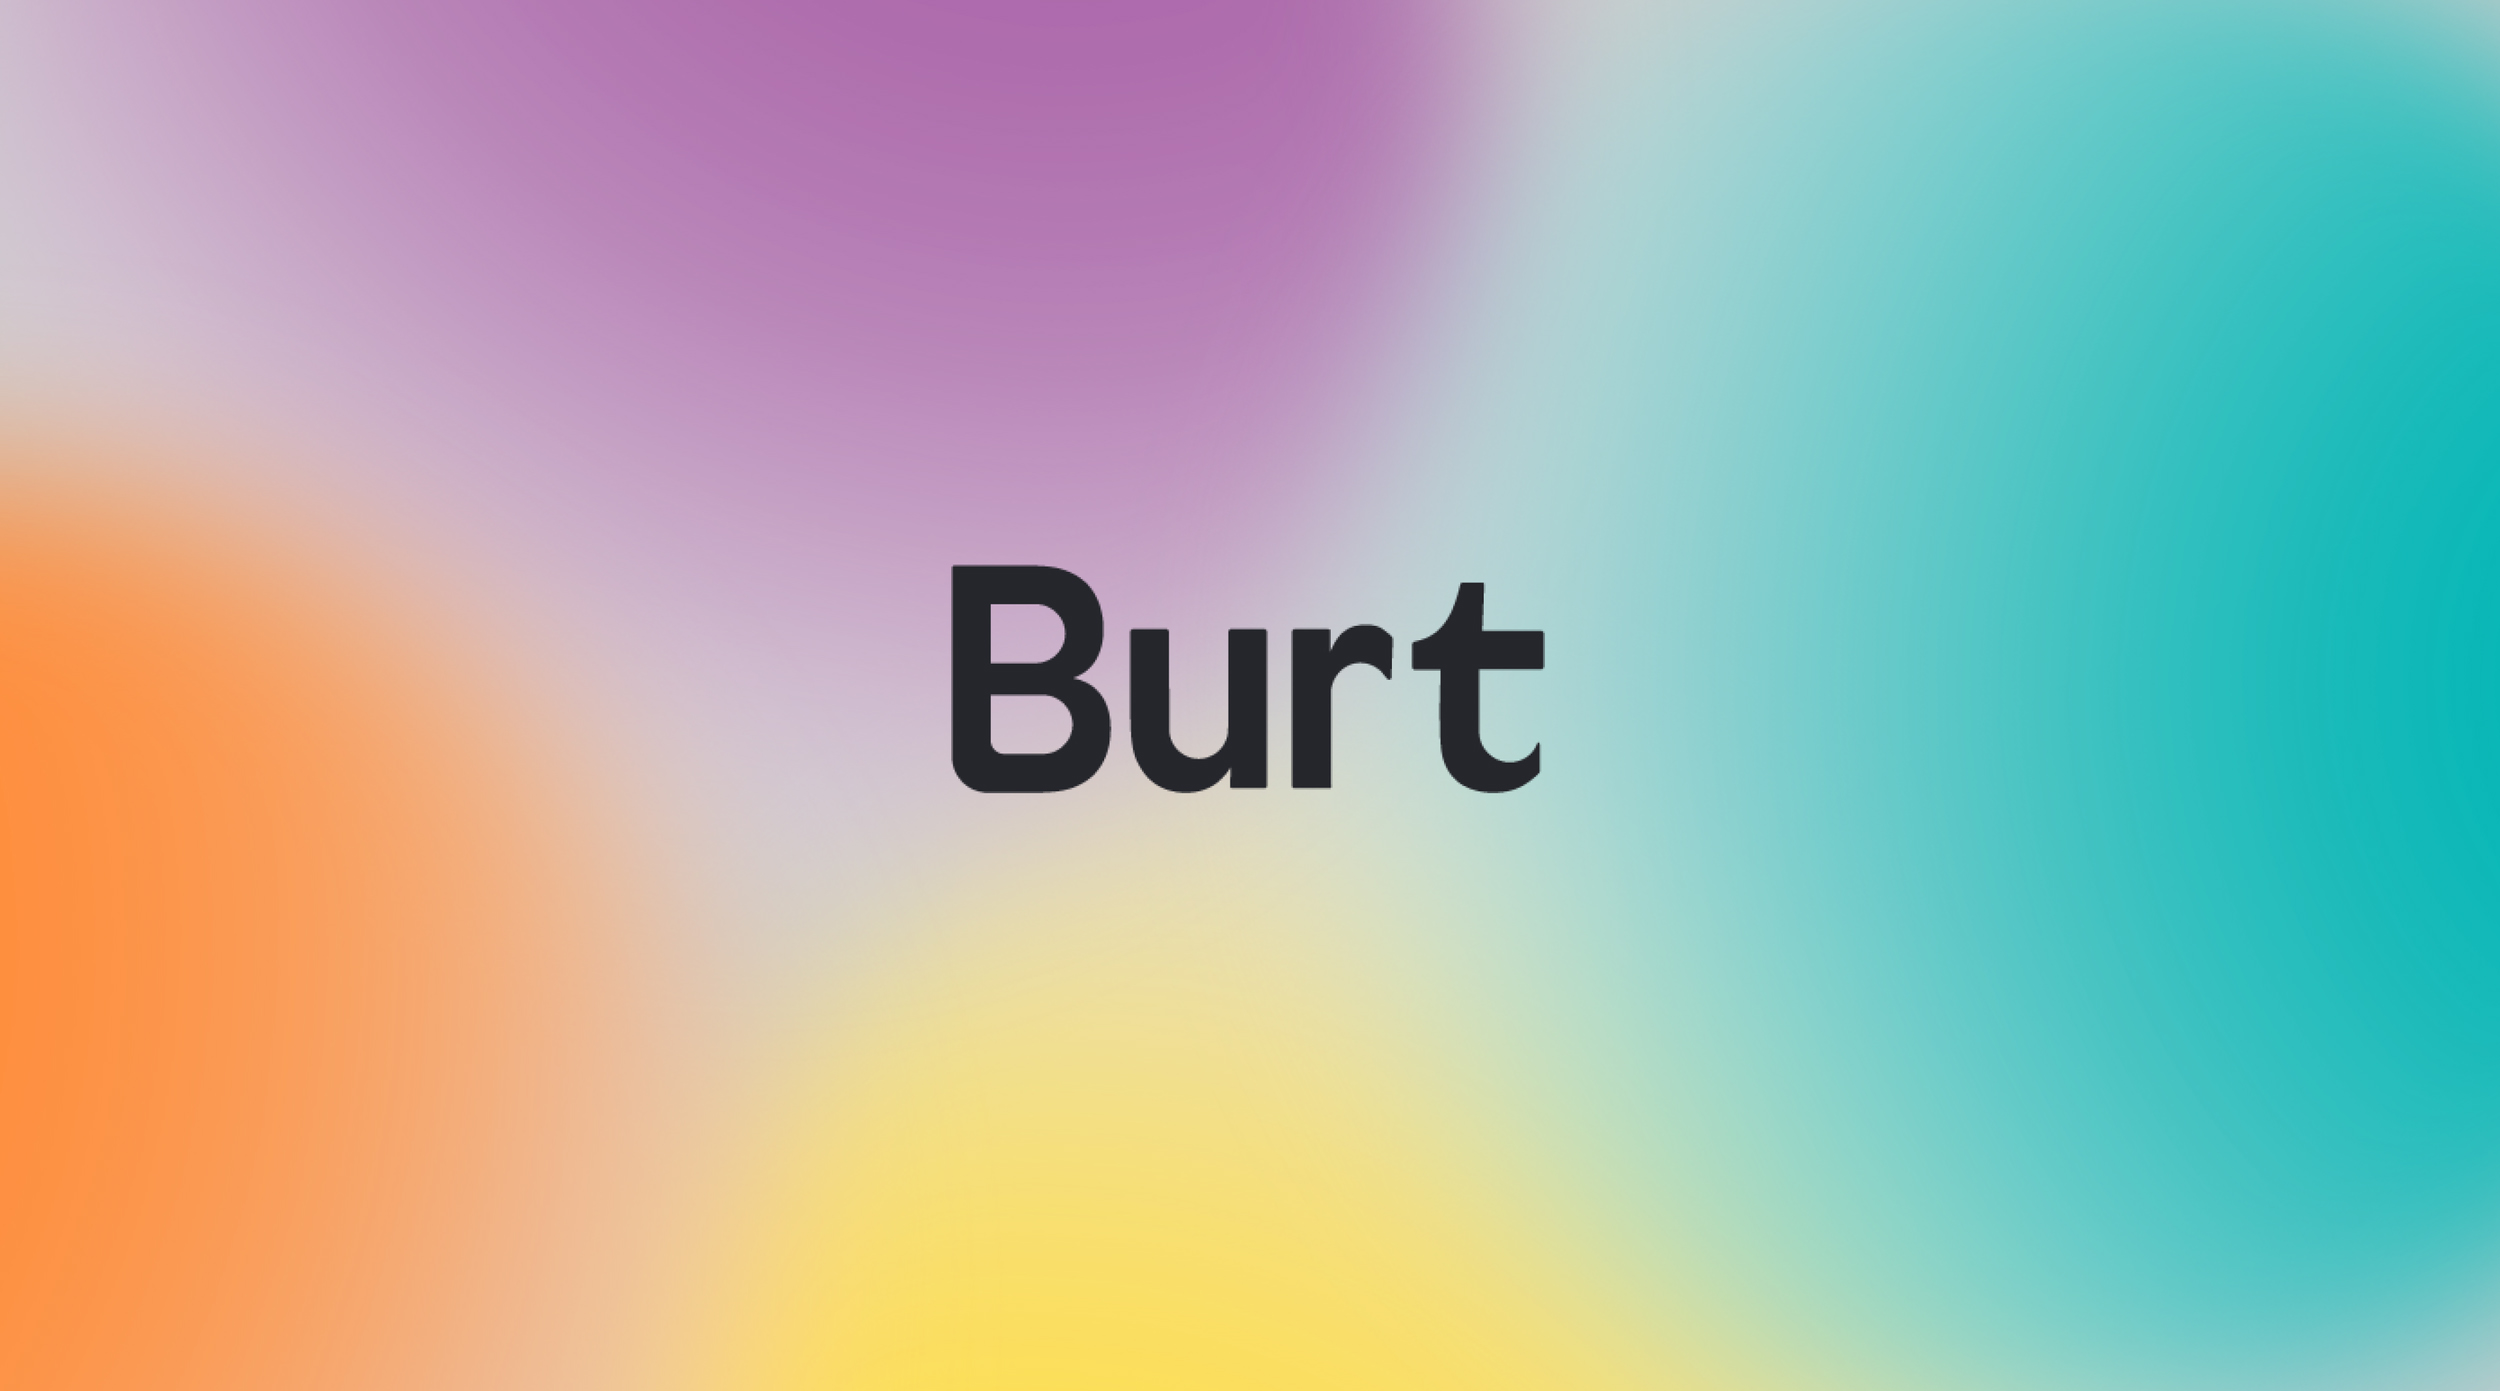 Charlotte Fosdike Creates Vibrant Branding and Mobile App Design for Burt App